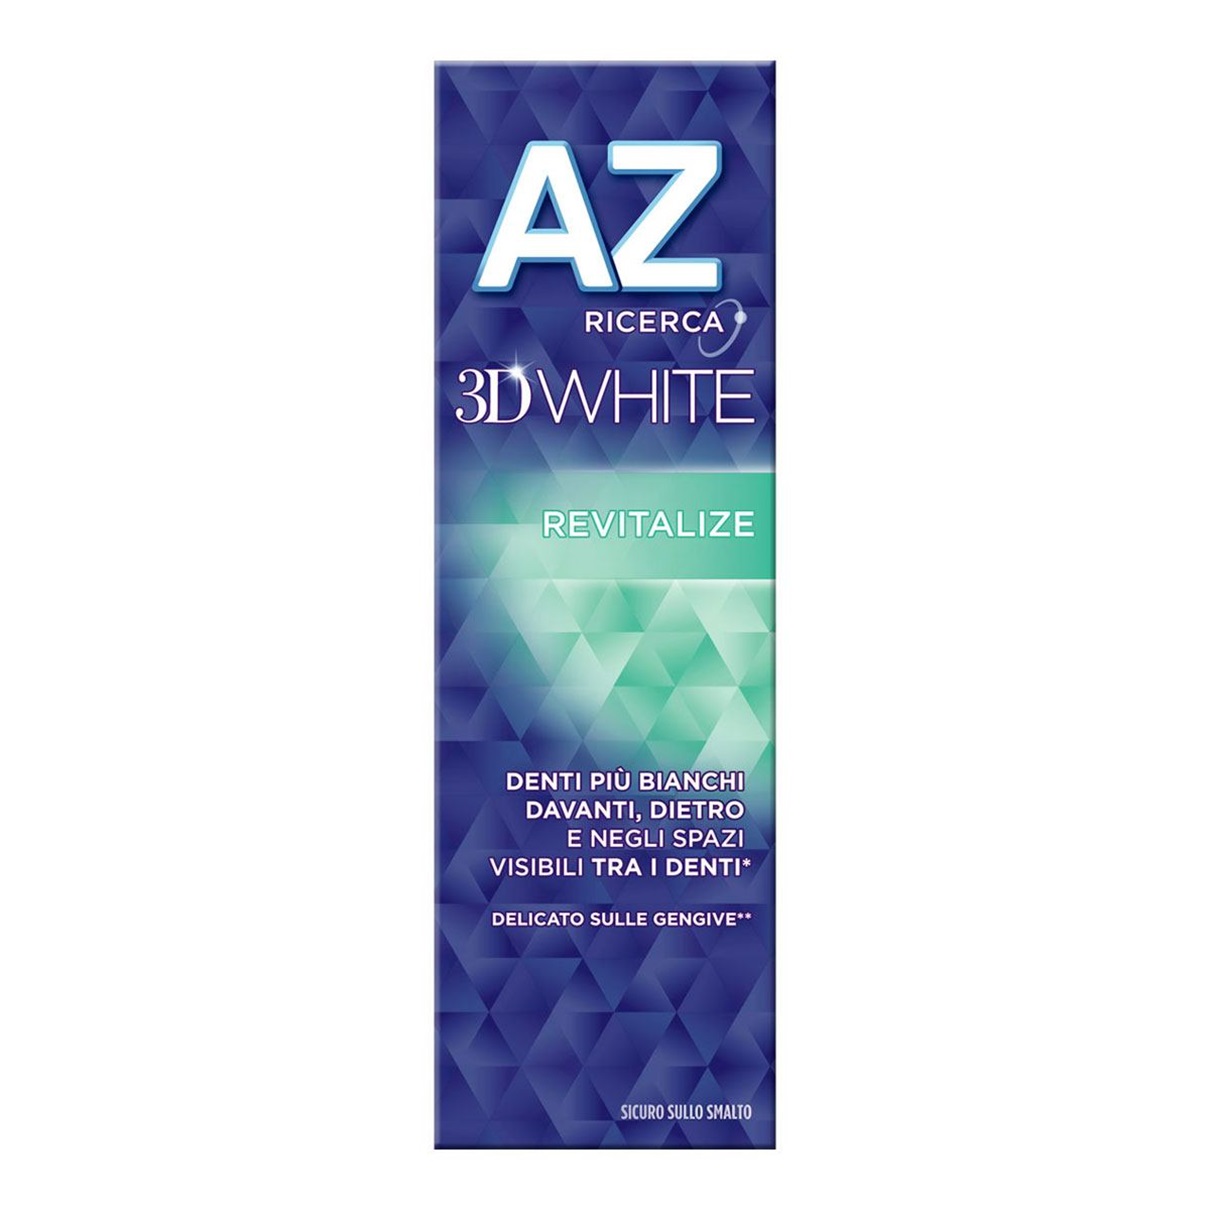 AZ DENTIFRICIO 3D WHITE REVITALIZE 65+10 ML